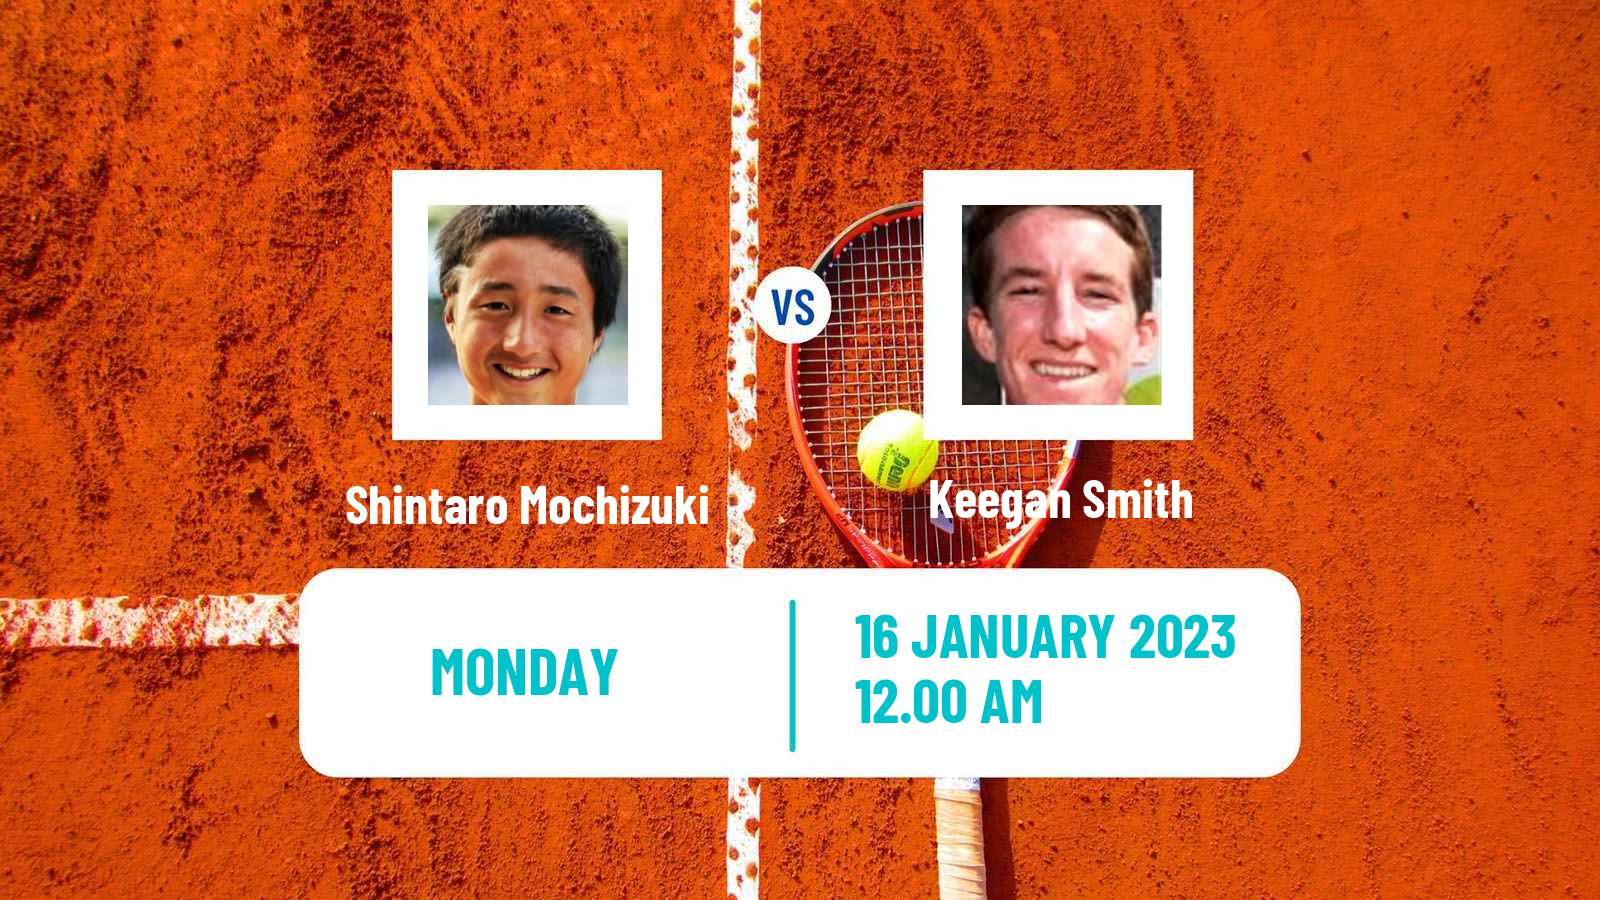 Tennis ATP Challenger Shintaro Mochizuki - Keegan Smith